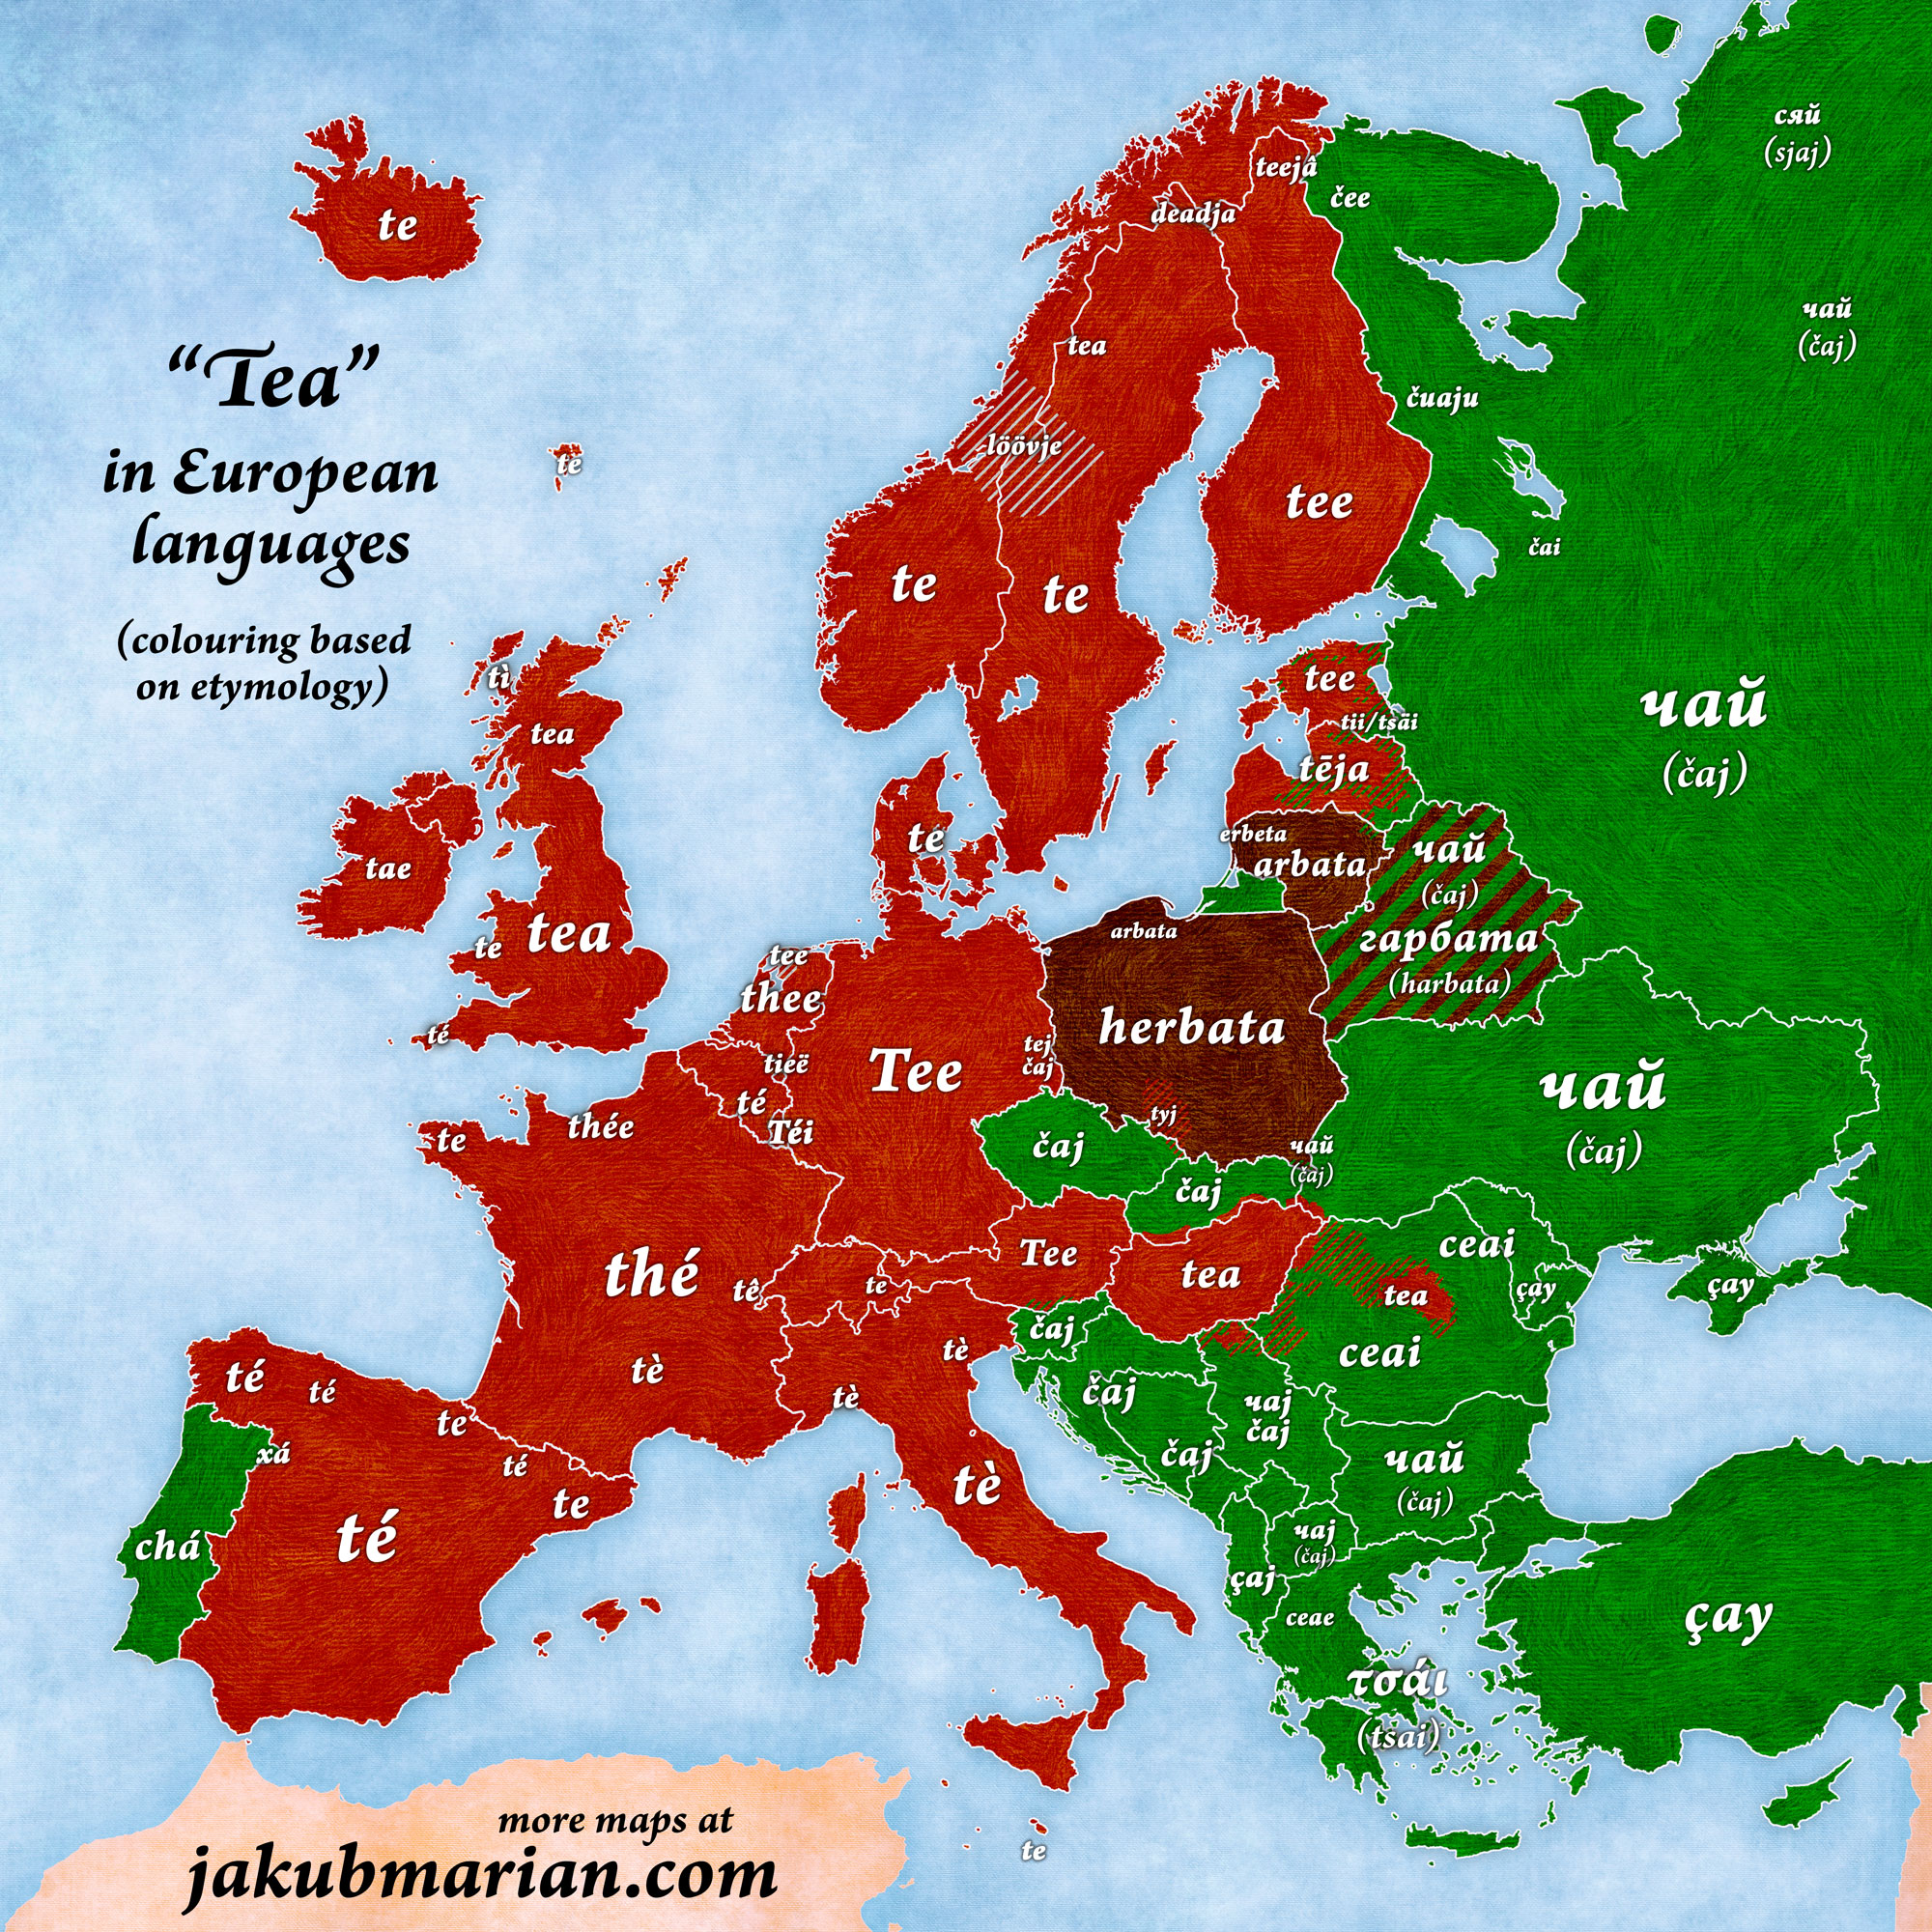 Tea in European languages